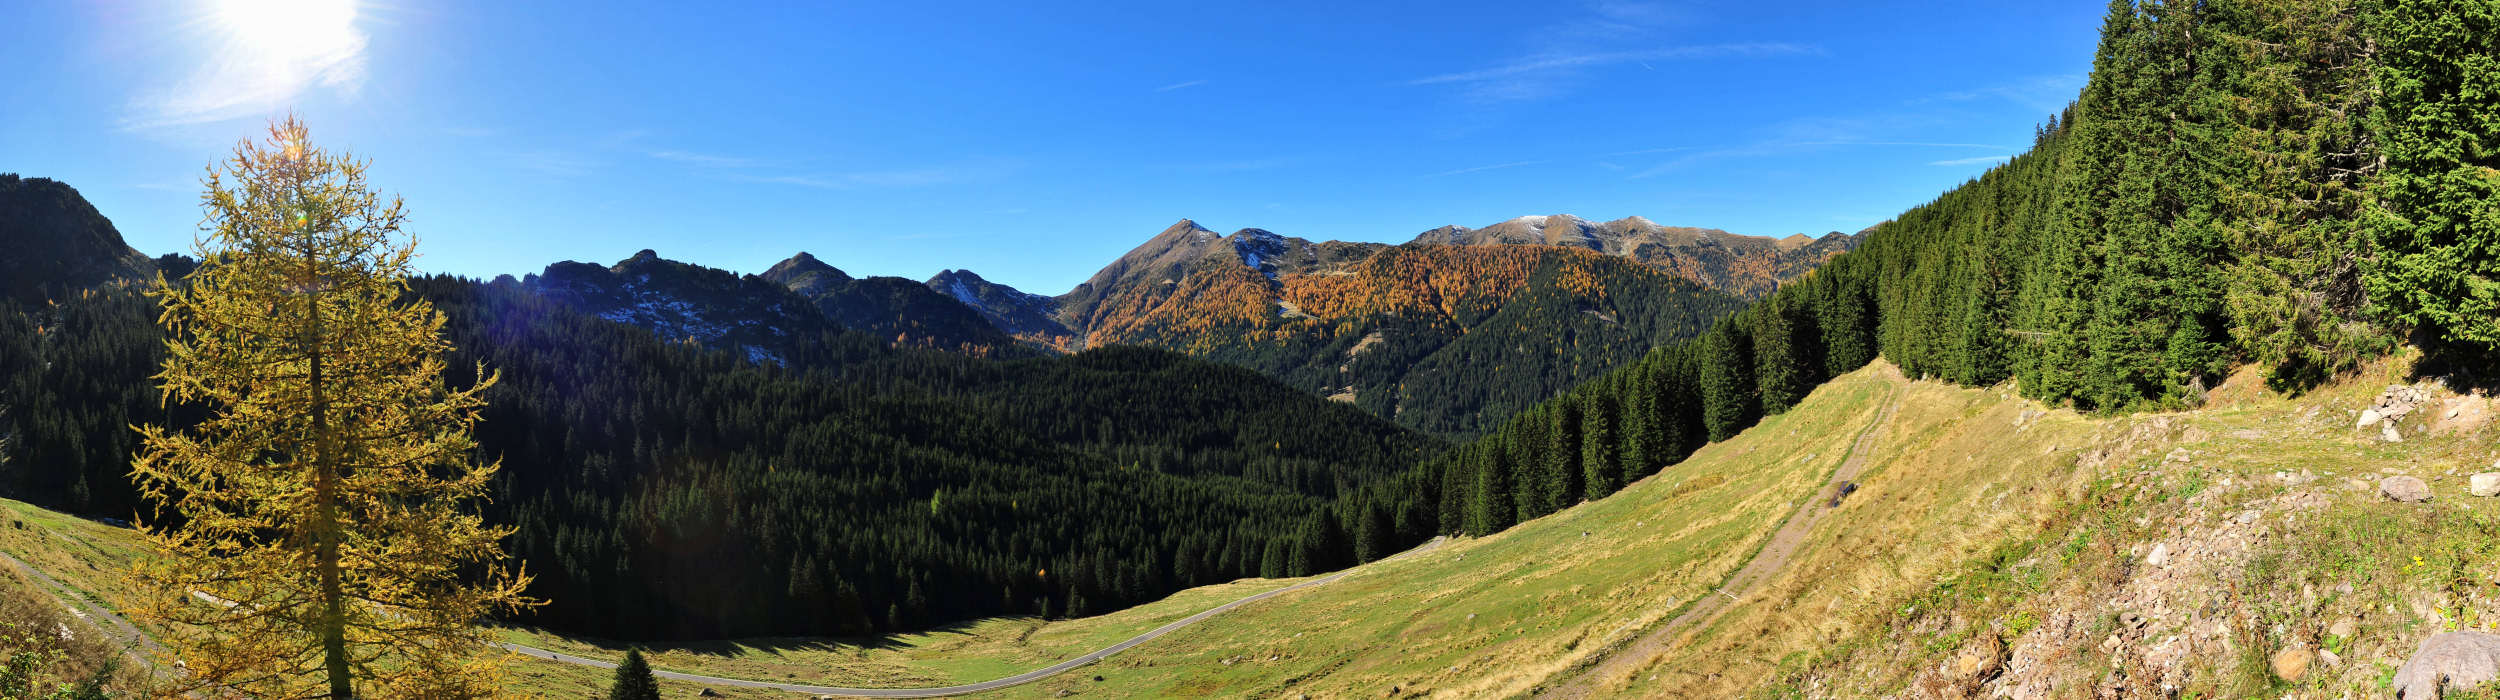 dal passo Manghen verso la Val Cadino, Lagorai, Trentino